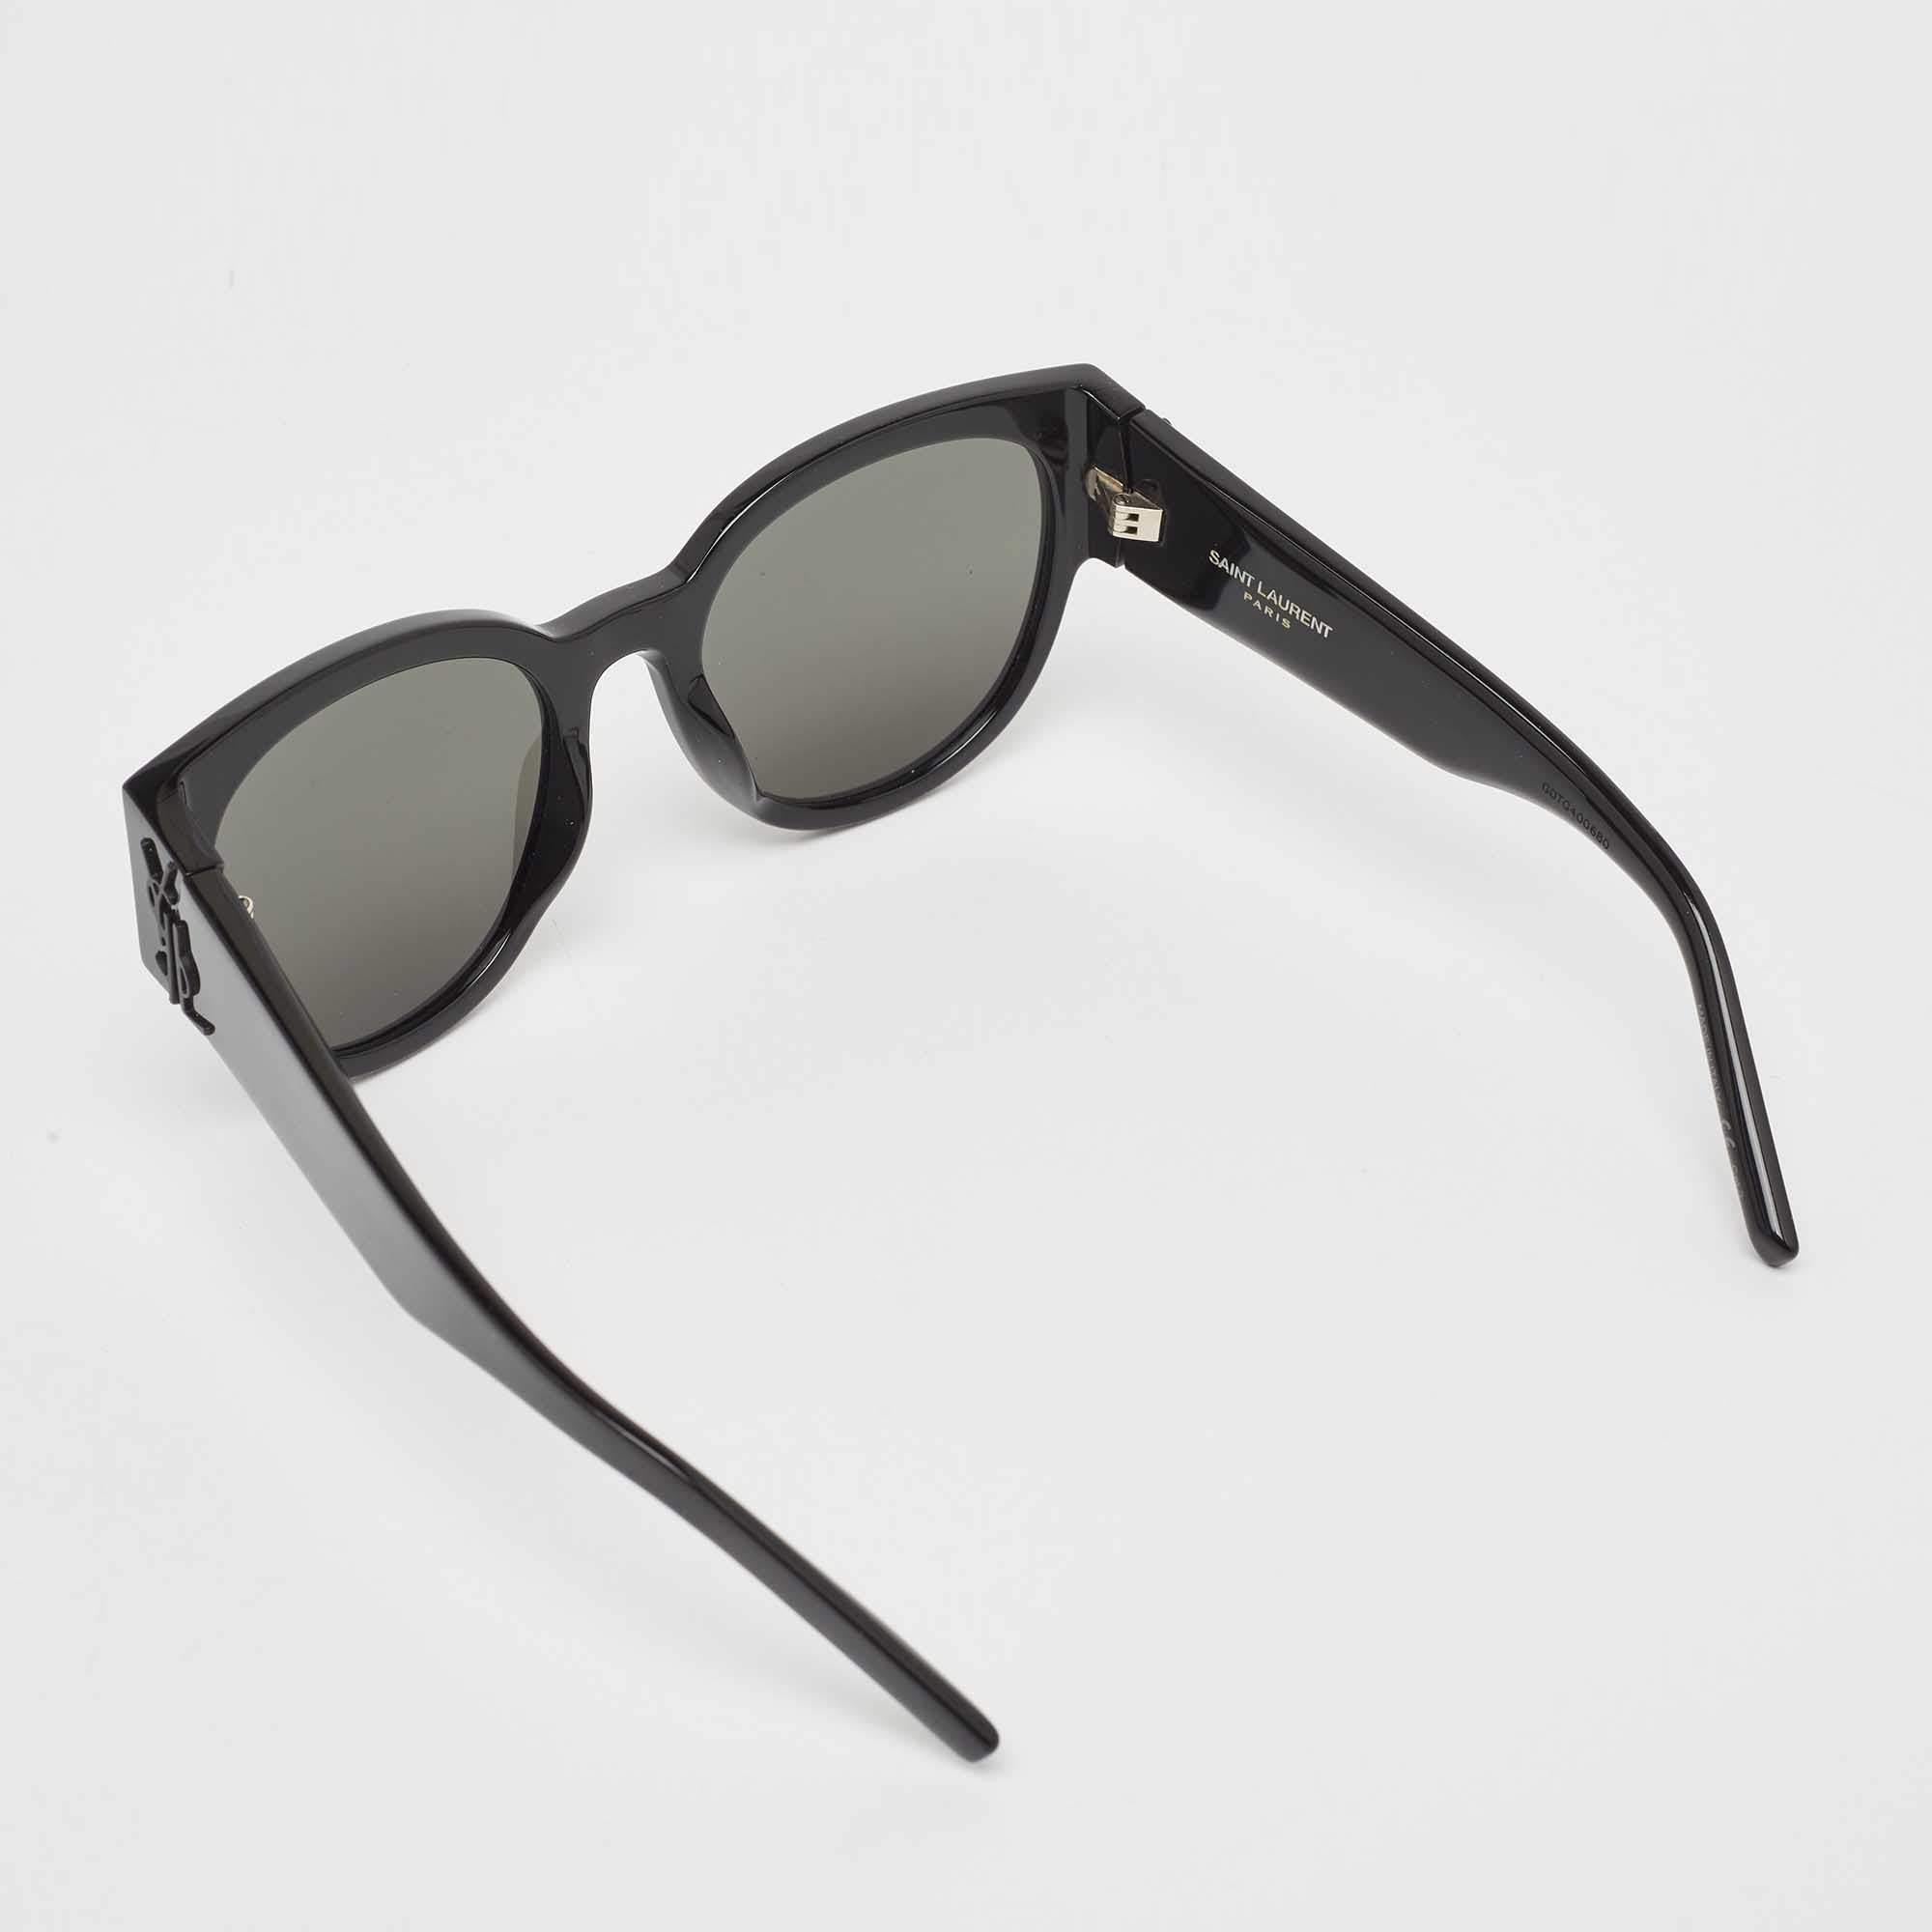 Cette paire de lunettes de soleil Saint Laurent vous permettra de profiter pleinement des journées ensoleillées. Créées avec expertise, ces lunettes de soleil de luxe sont dotées d'une monture bien conçue et de verres de qualité supérieure qui sont